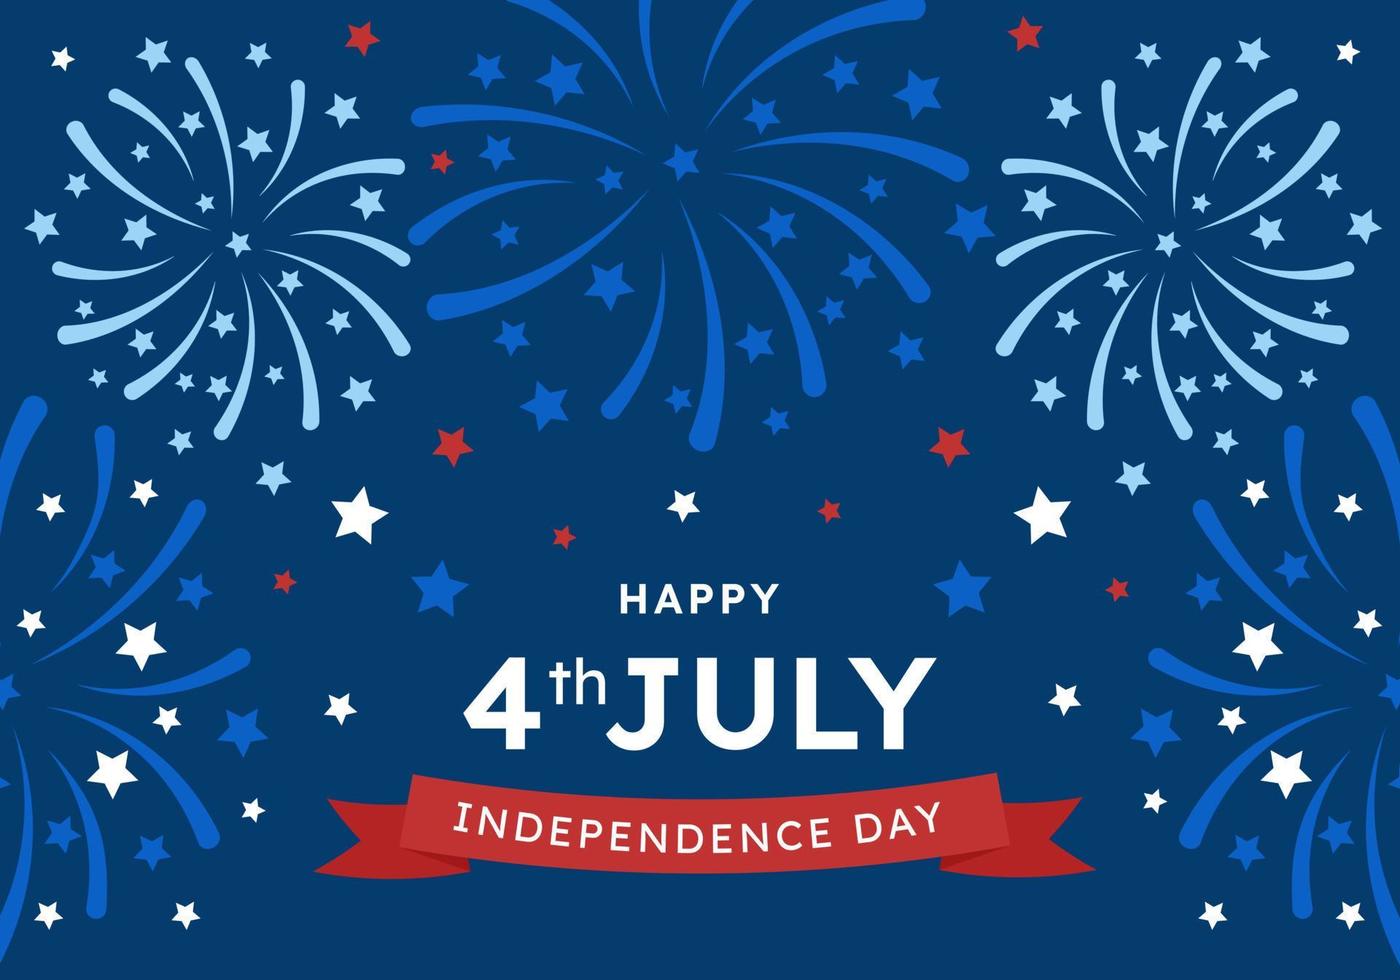 ontwerp Gefeliciteerd Aan de onafhankelijkheid dag van de Verenigde staten van Amerika, gedenkteken dag, versierd met een achtergrond van vuurwerk en sterren, juli 4e. banier voor de internetten, groet kaart. vector